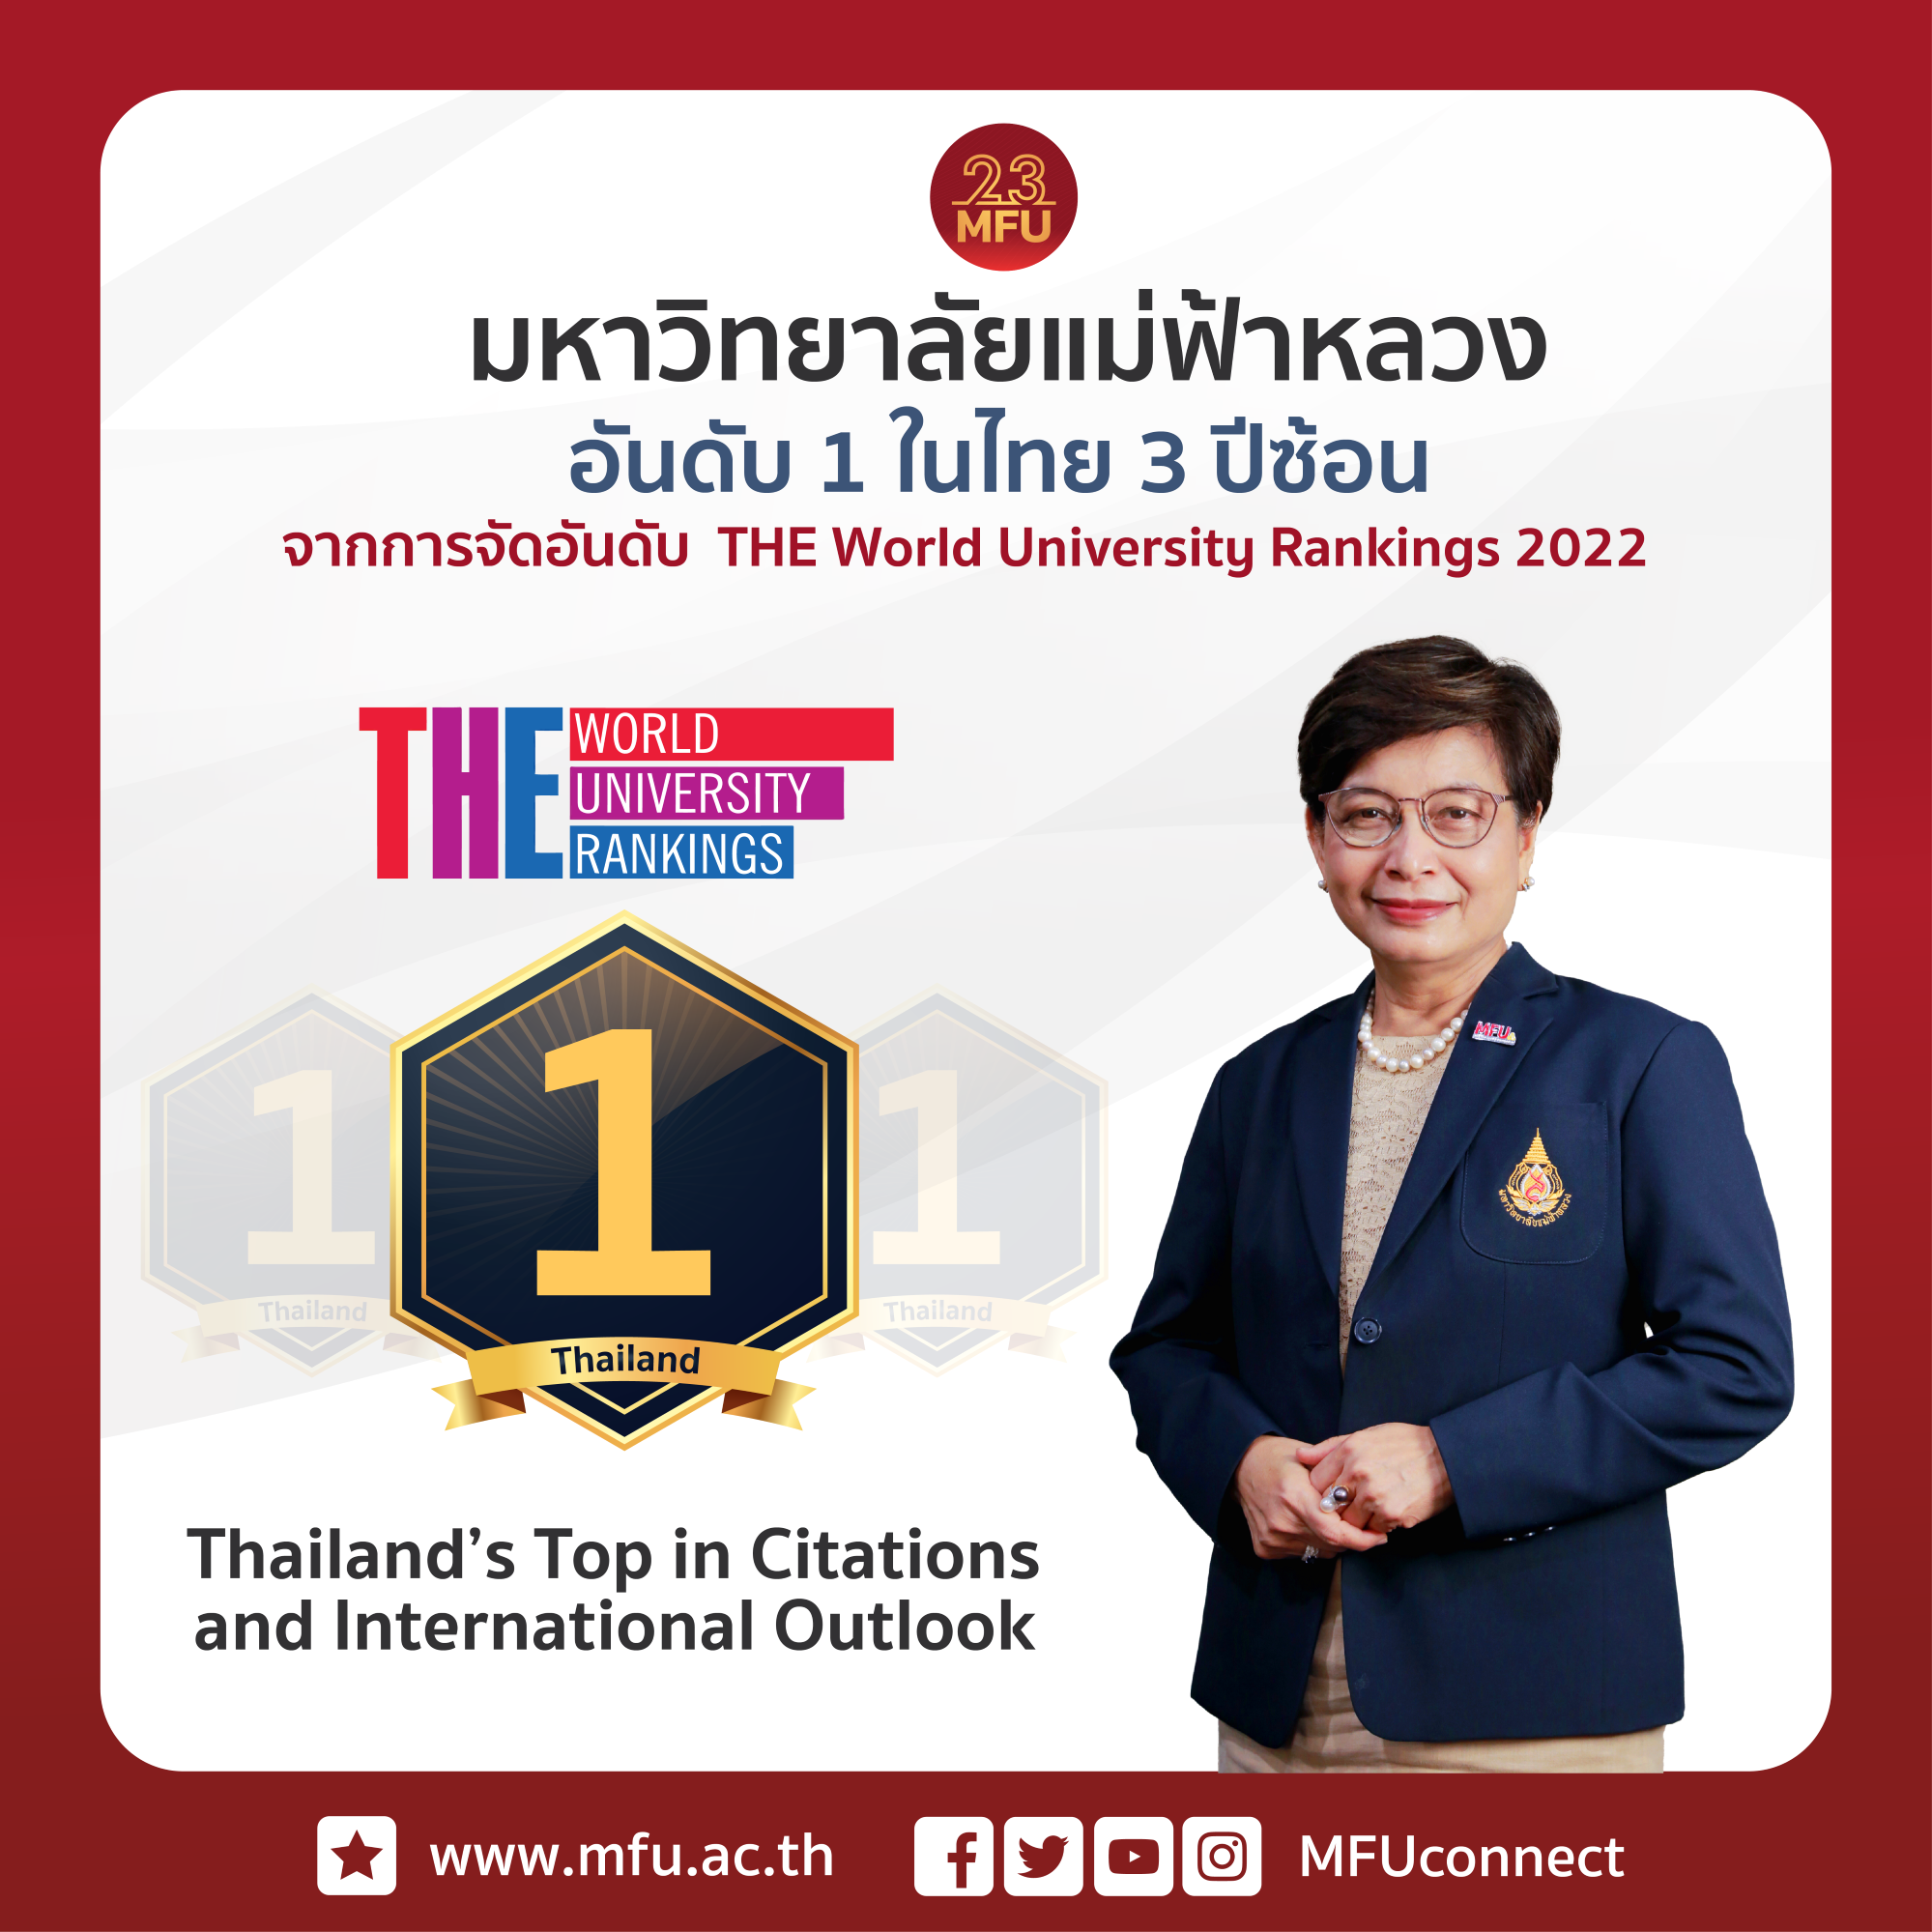 มฟล. ได้รับการจัดอันดับให้เป็นมหาวิทยาลัยไทยที่ดีที่สุดในโลก 3 ปีซ้อนจาก THE World University Rankings 2022 